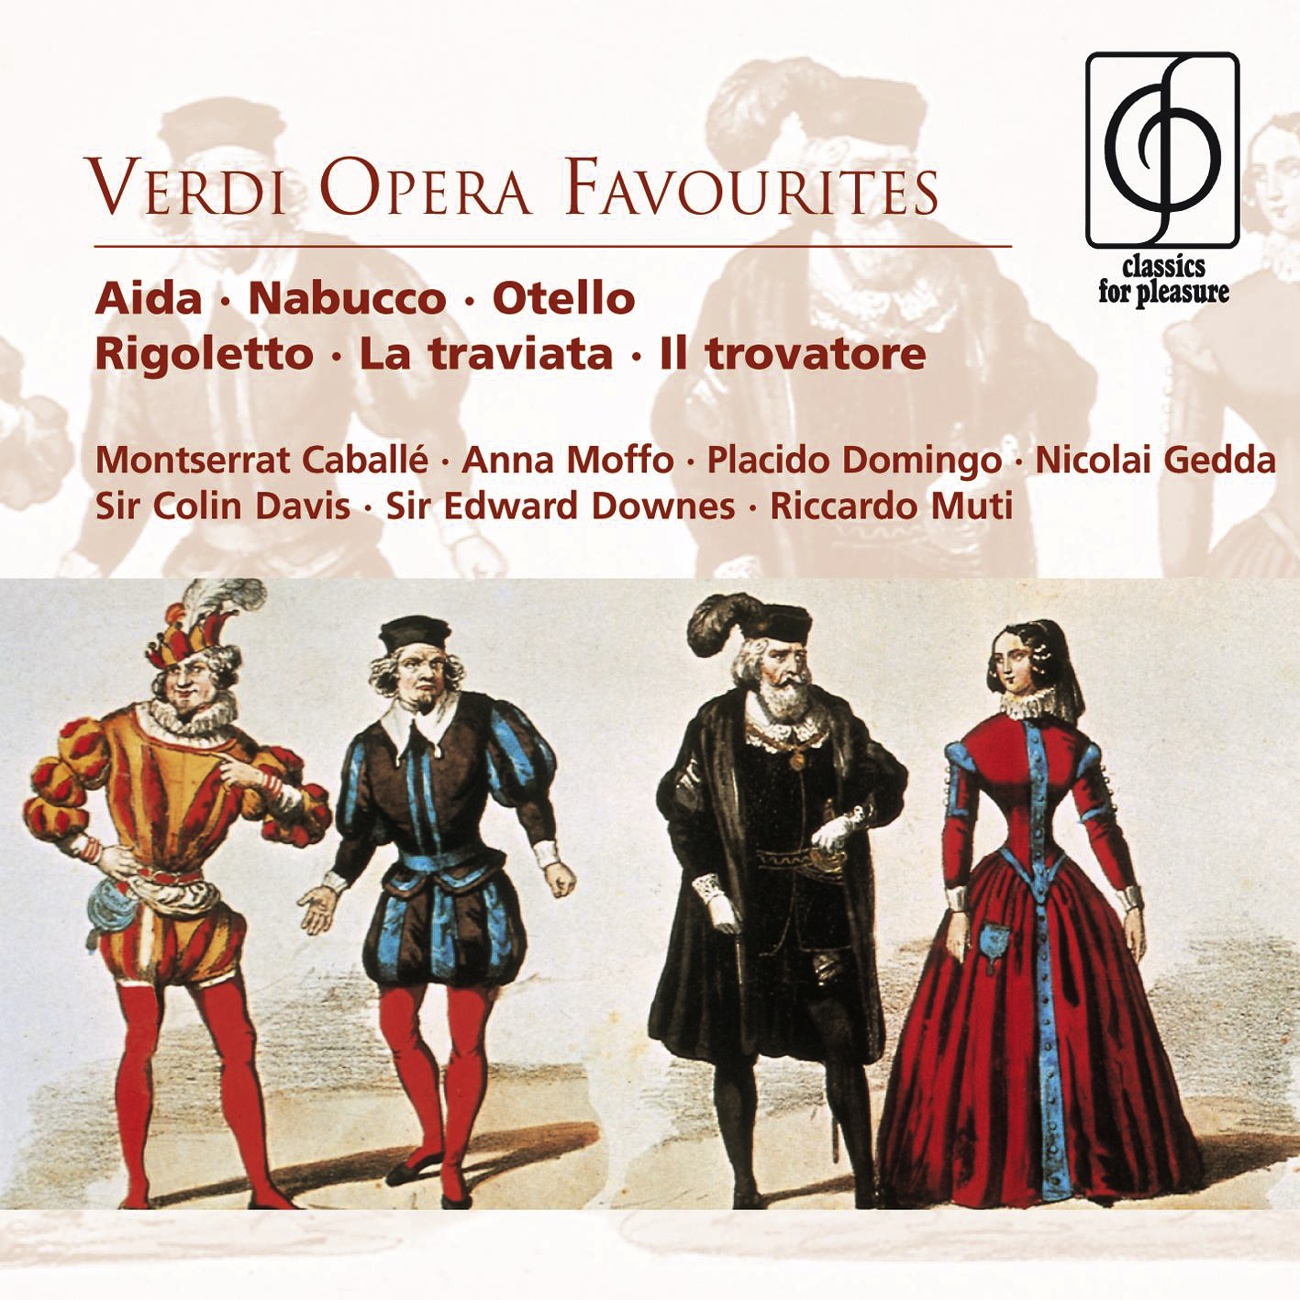 Il Trovatore (1990 Digital Remaster): Vedi! le fosche notturne spoglie (Anvil Chorus)  (Act II)